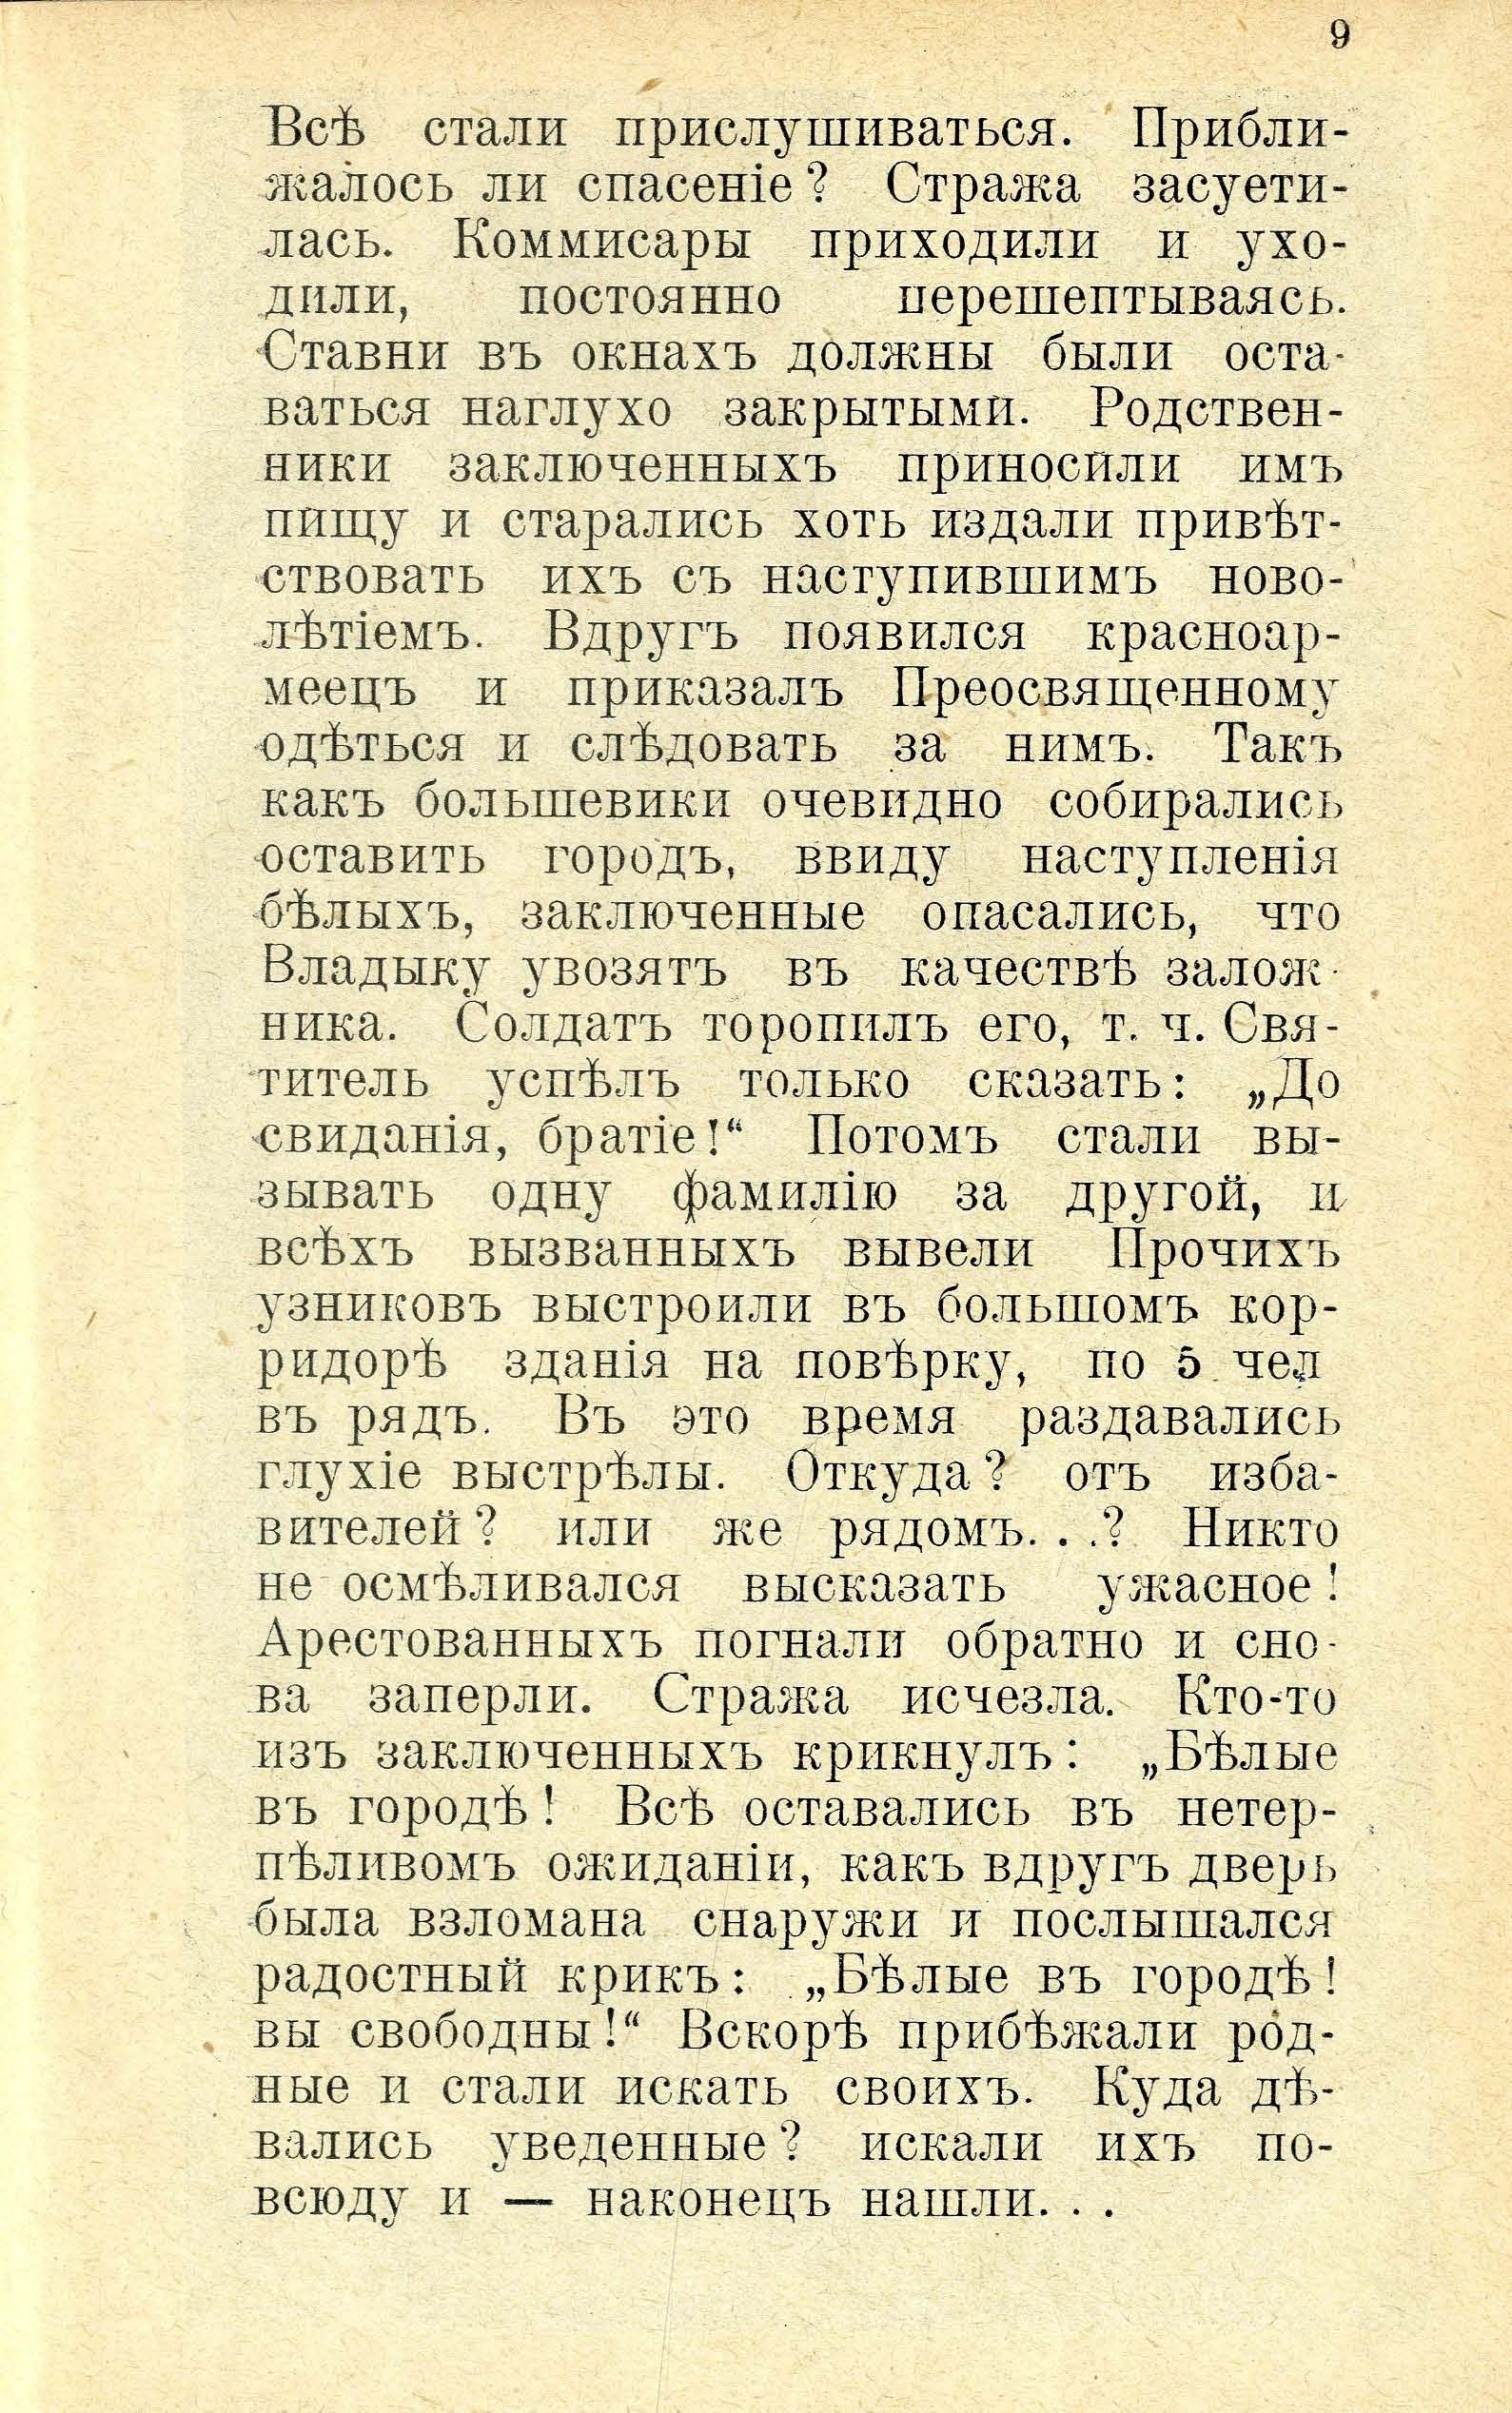 Юрьевские мученники 1919. года (1932) | 10. (9) Main body of text